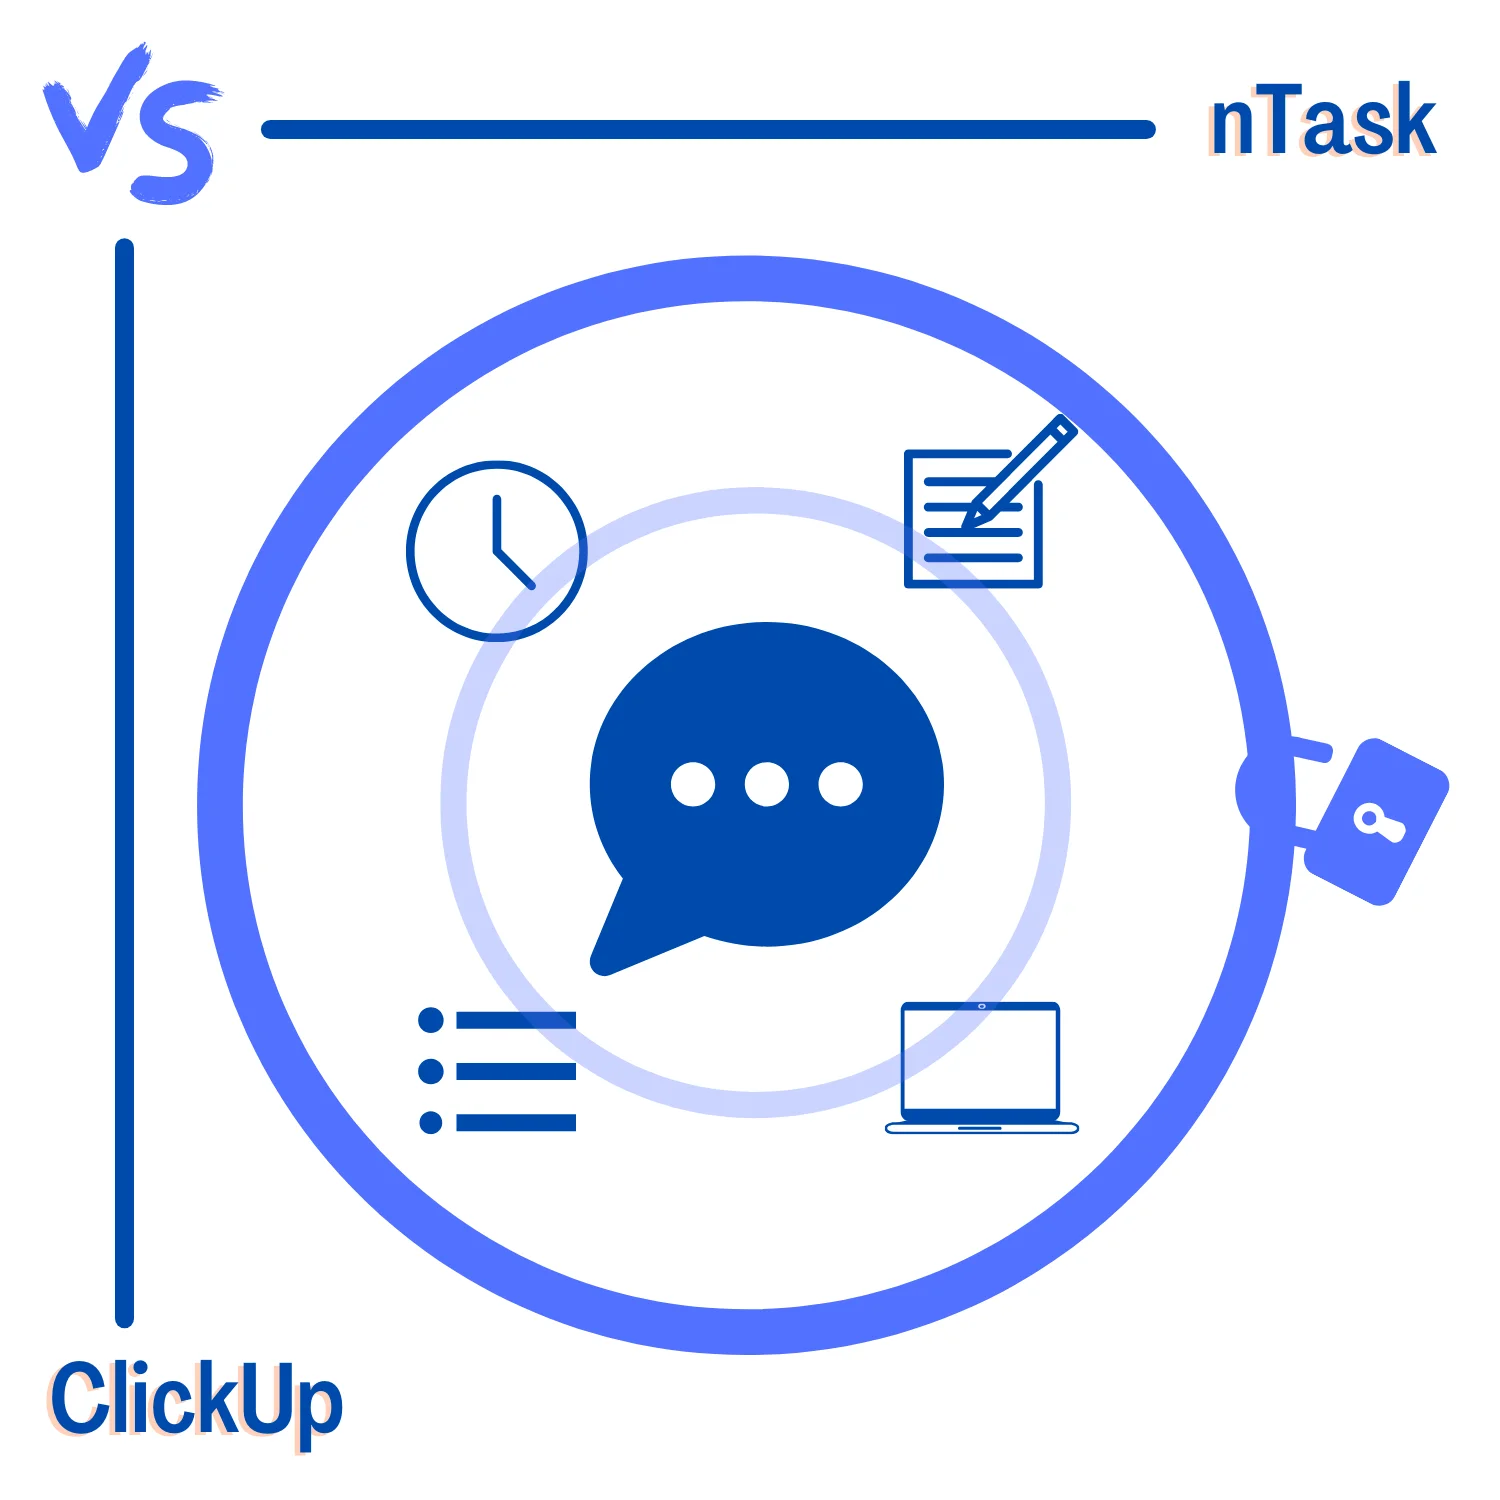 nTask vs. ClickUp